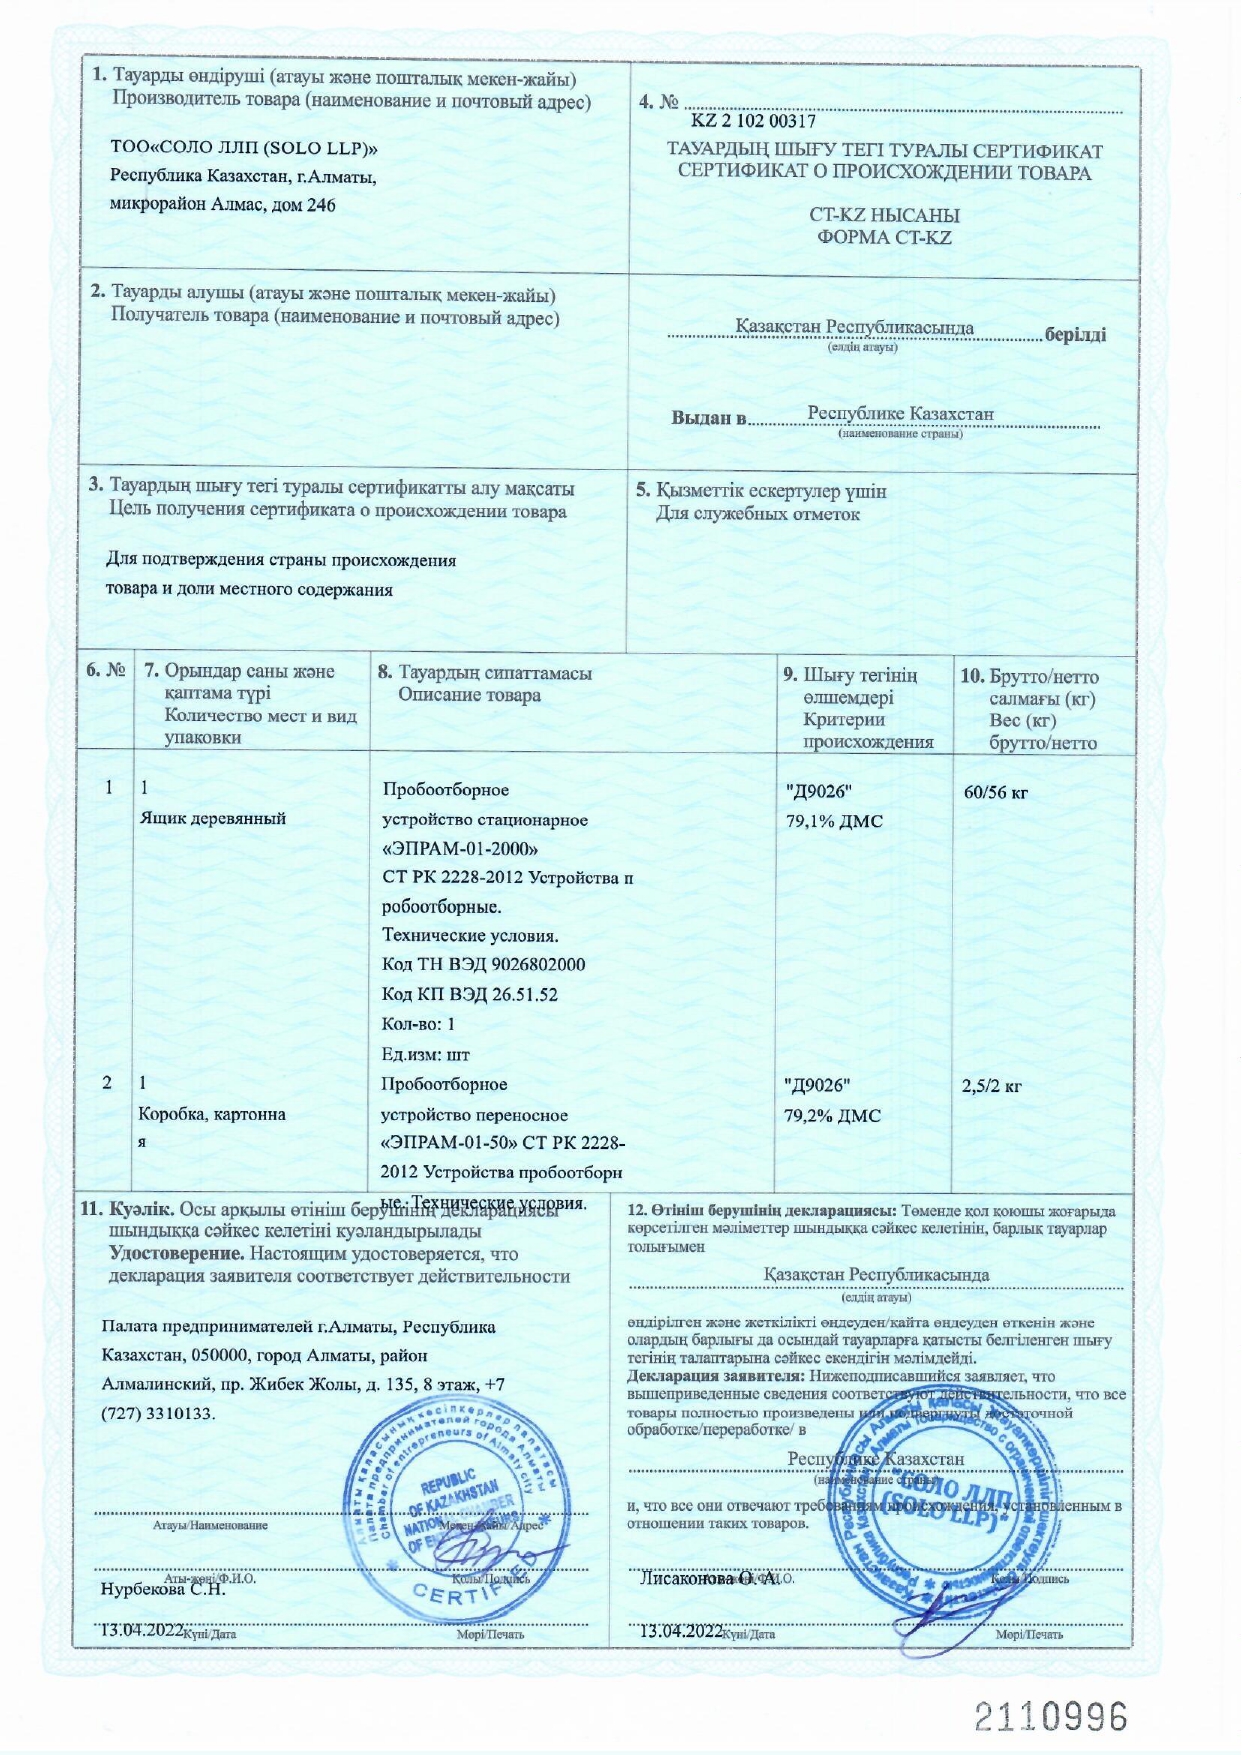 ТОО «СОЛО ЛЛП (SOLO LLP)» получило новый сертификат о происхождении товара формы"СТ-KZ"